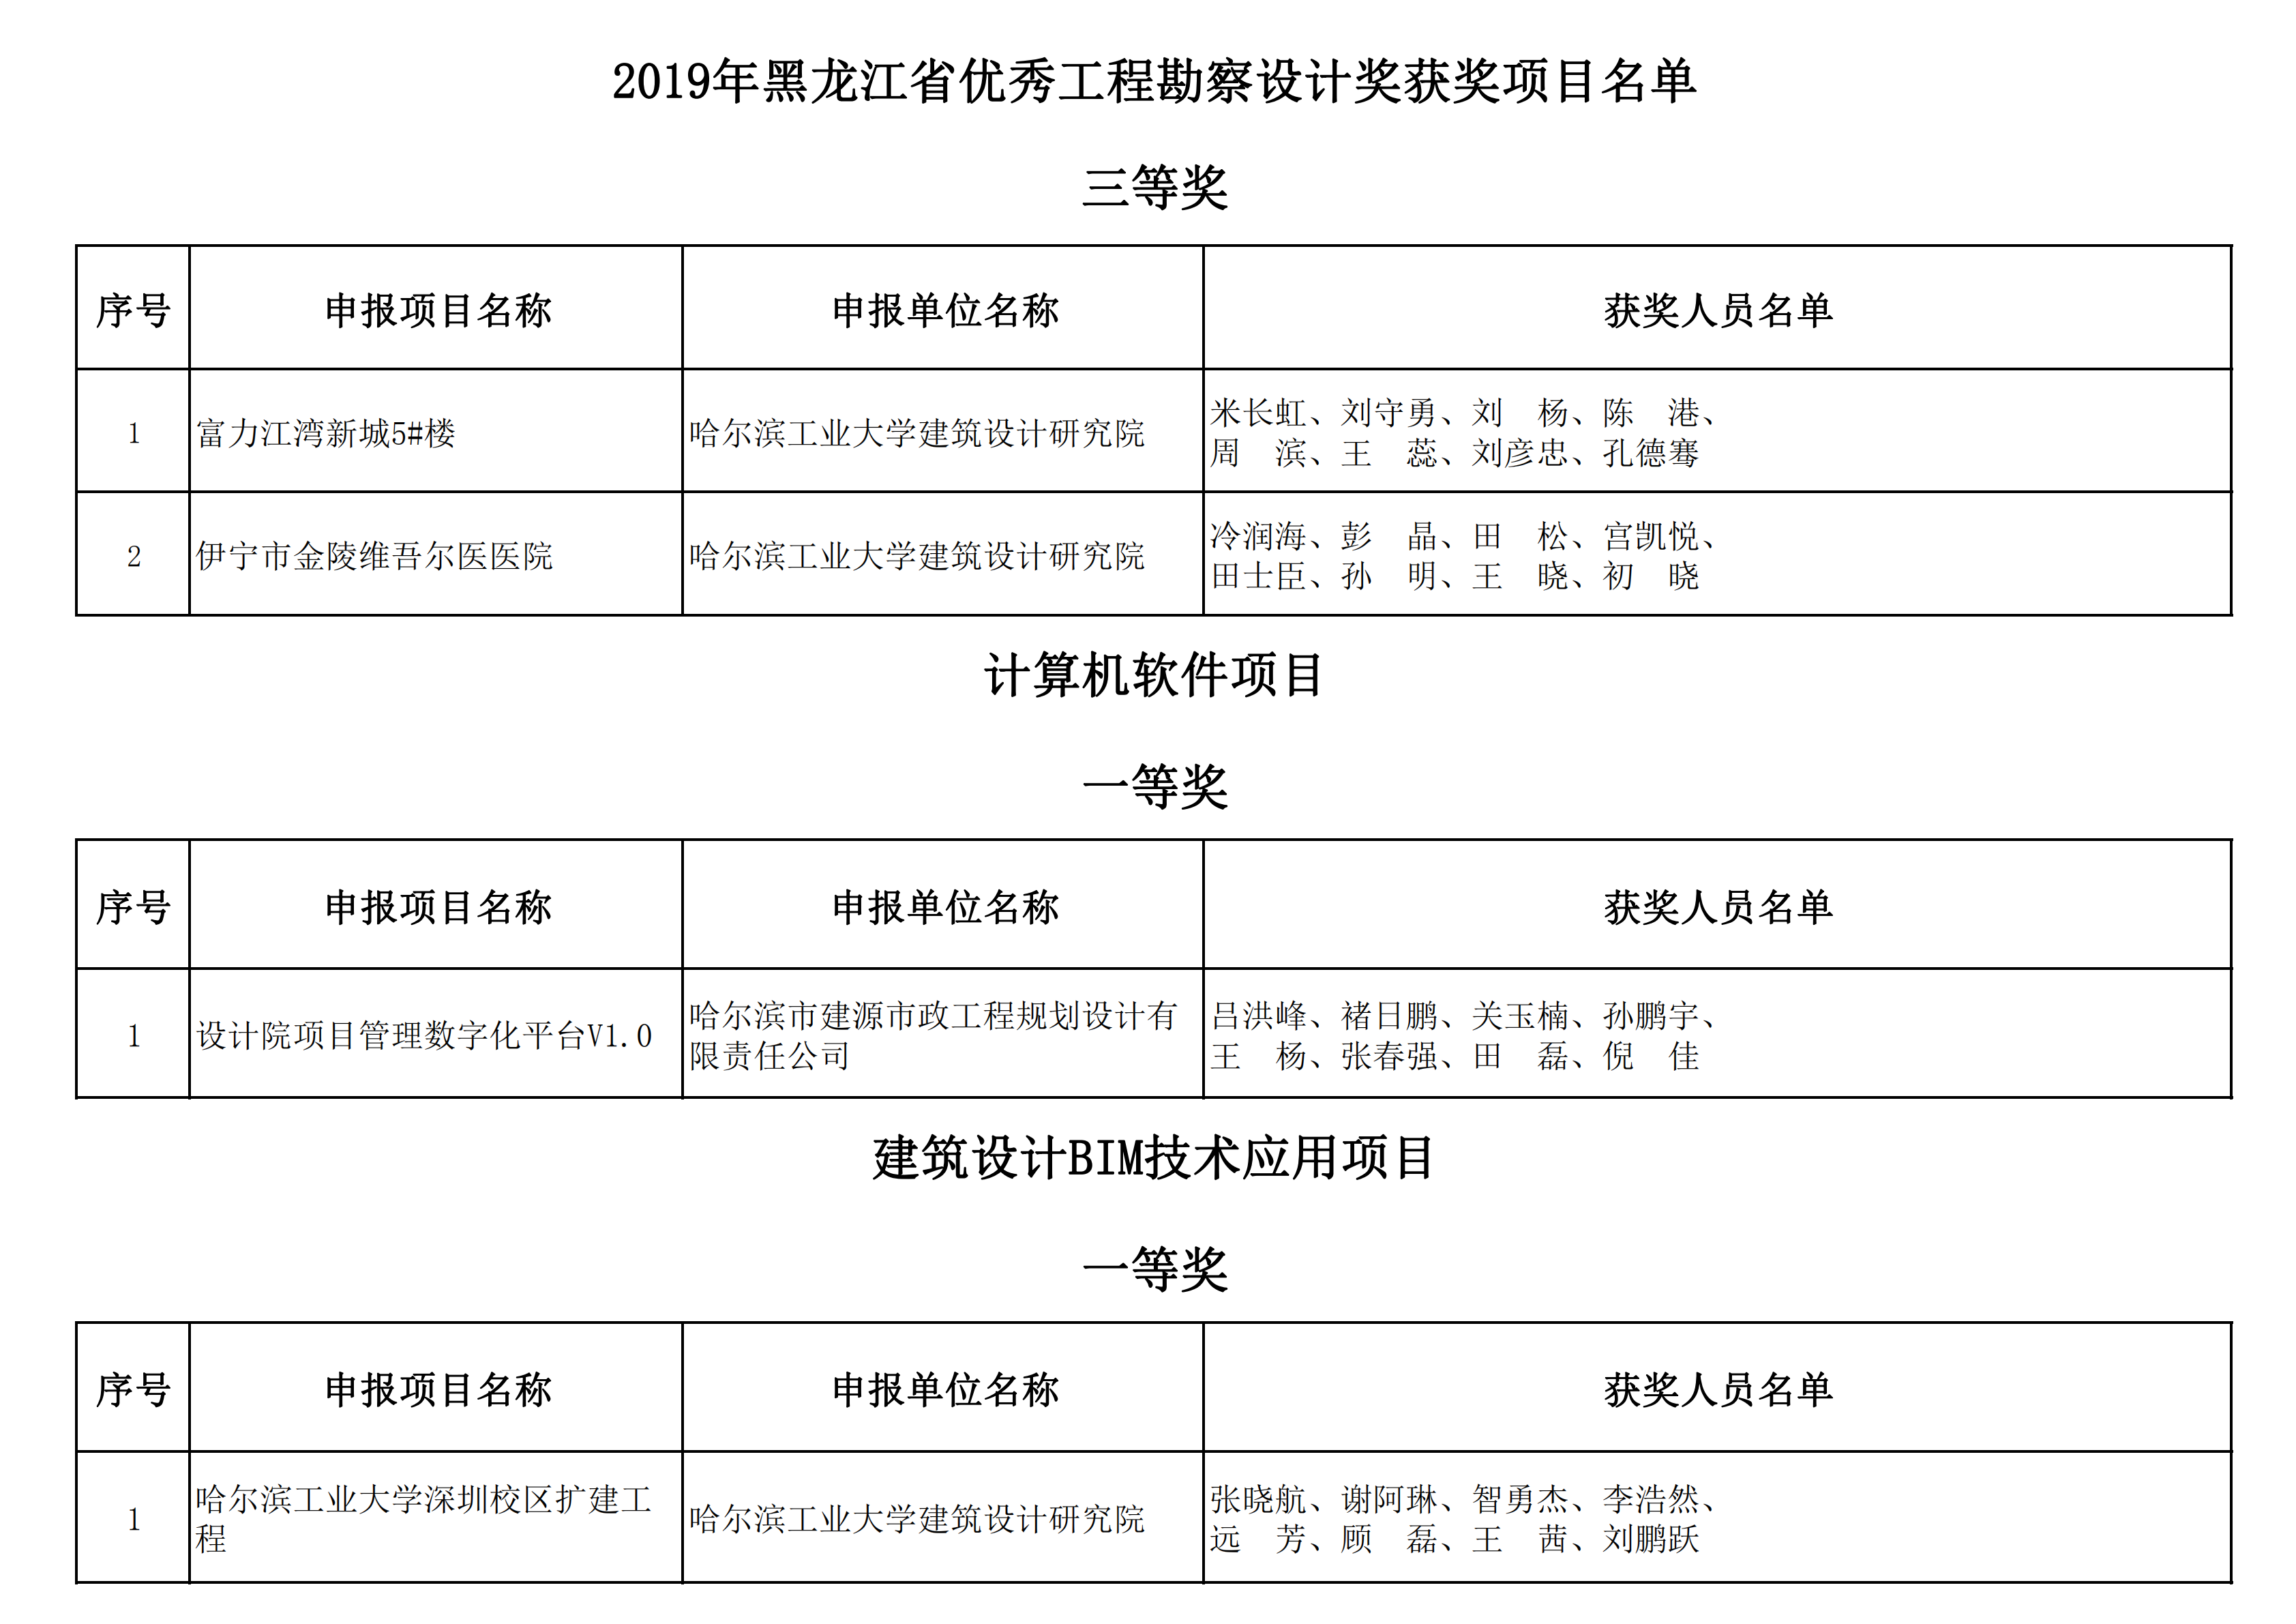 2019年黑龙江省优秀工程勘察设计奖获奖项目名单_19.png